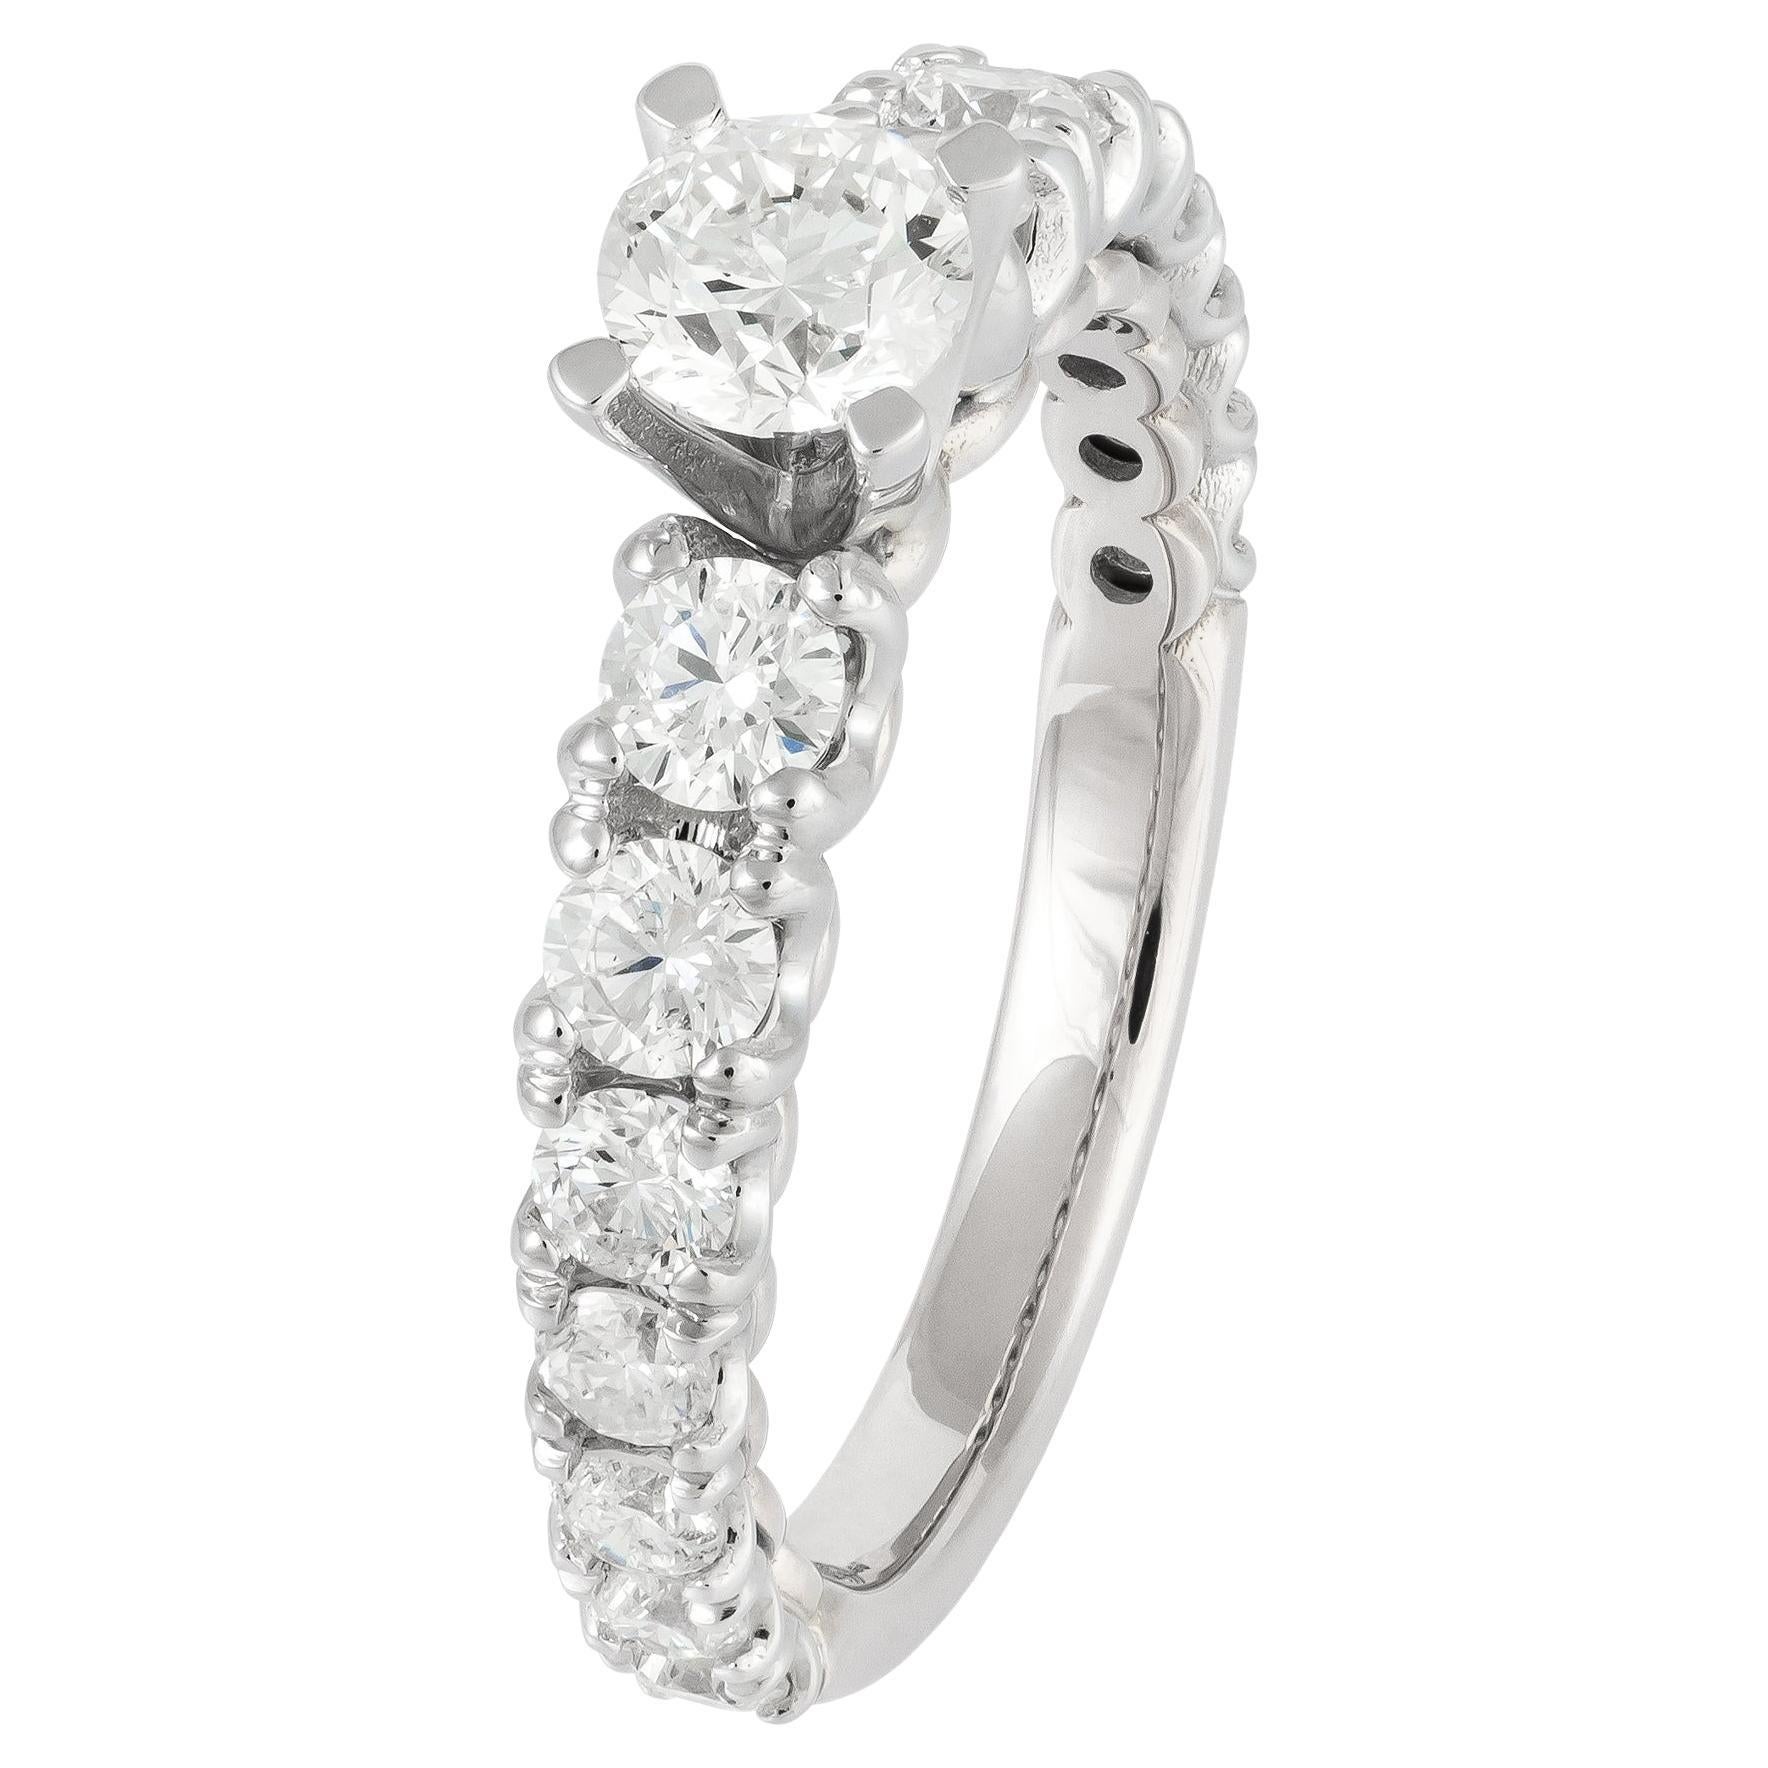 Breathtaking White 18K Gold White Diamond Ring For Her